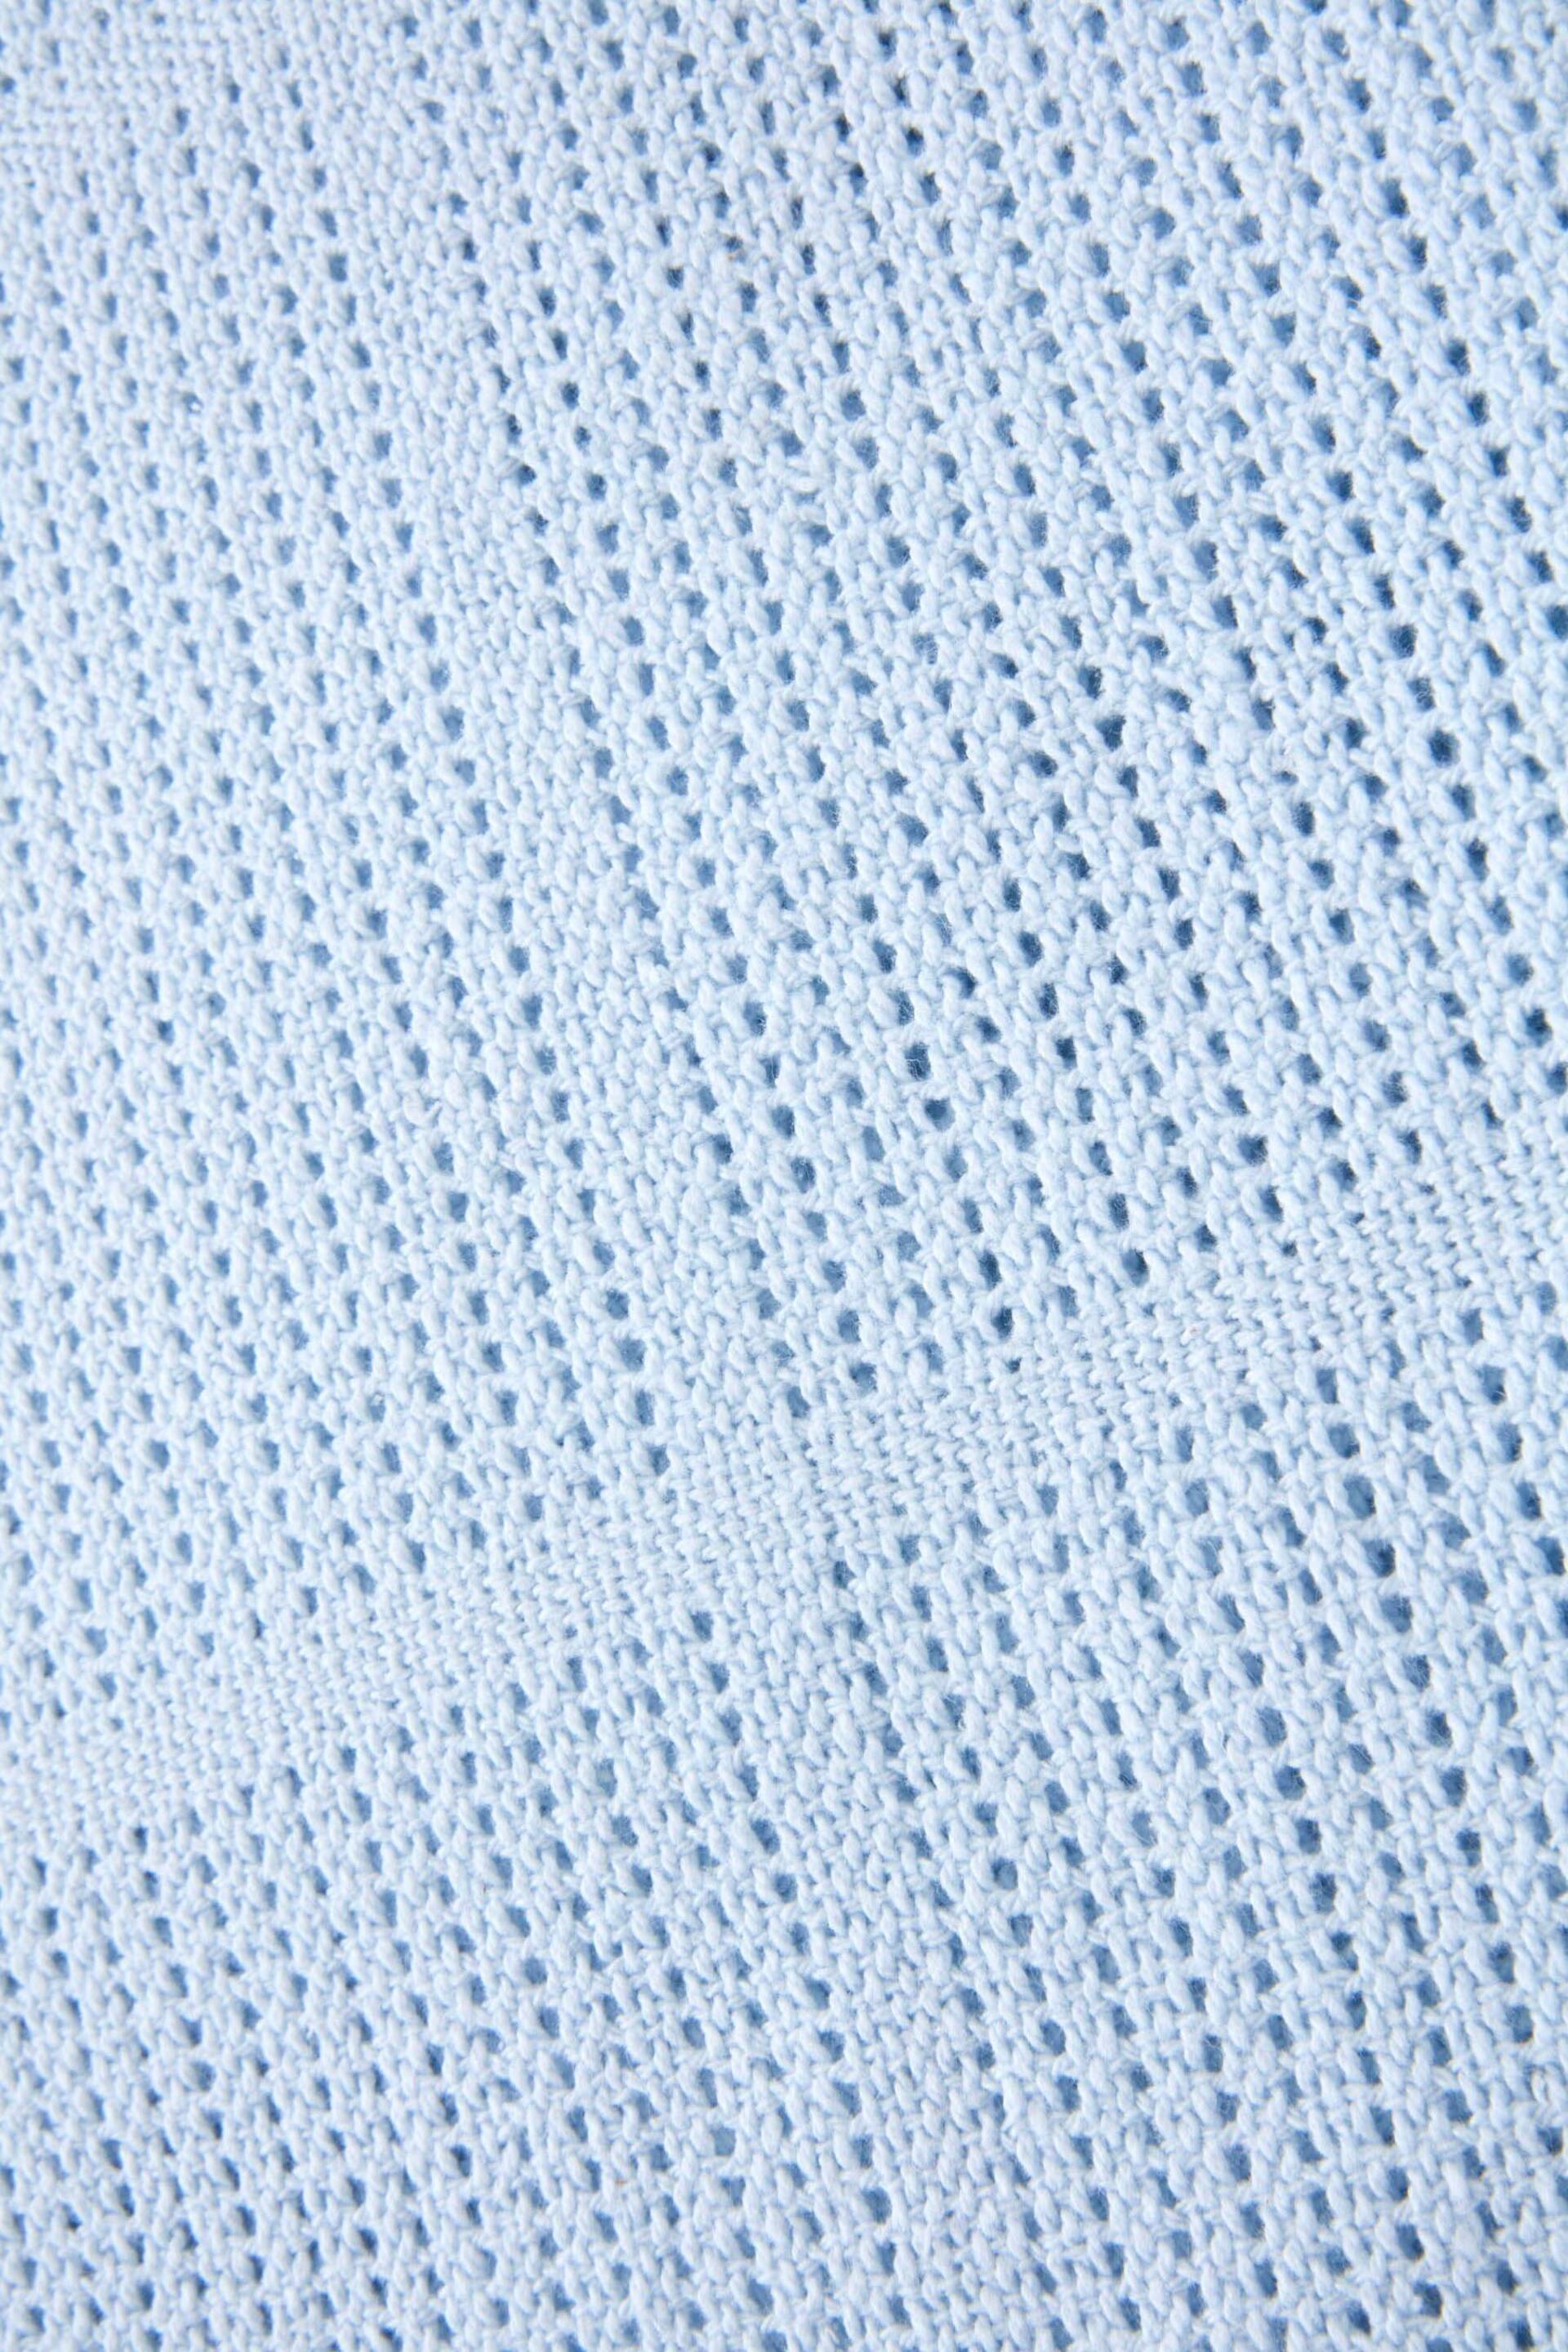 Martex Baby Blue Cellular Blanket - Image 2 of 3